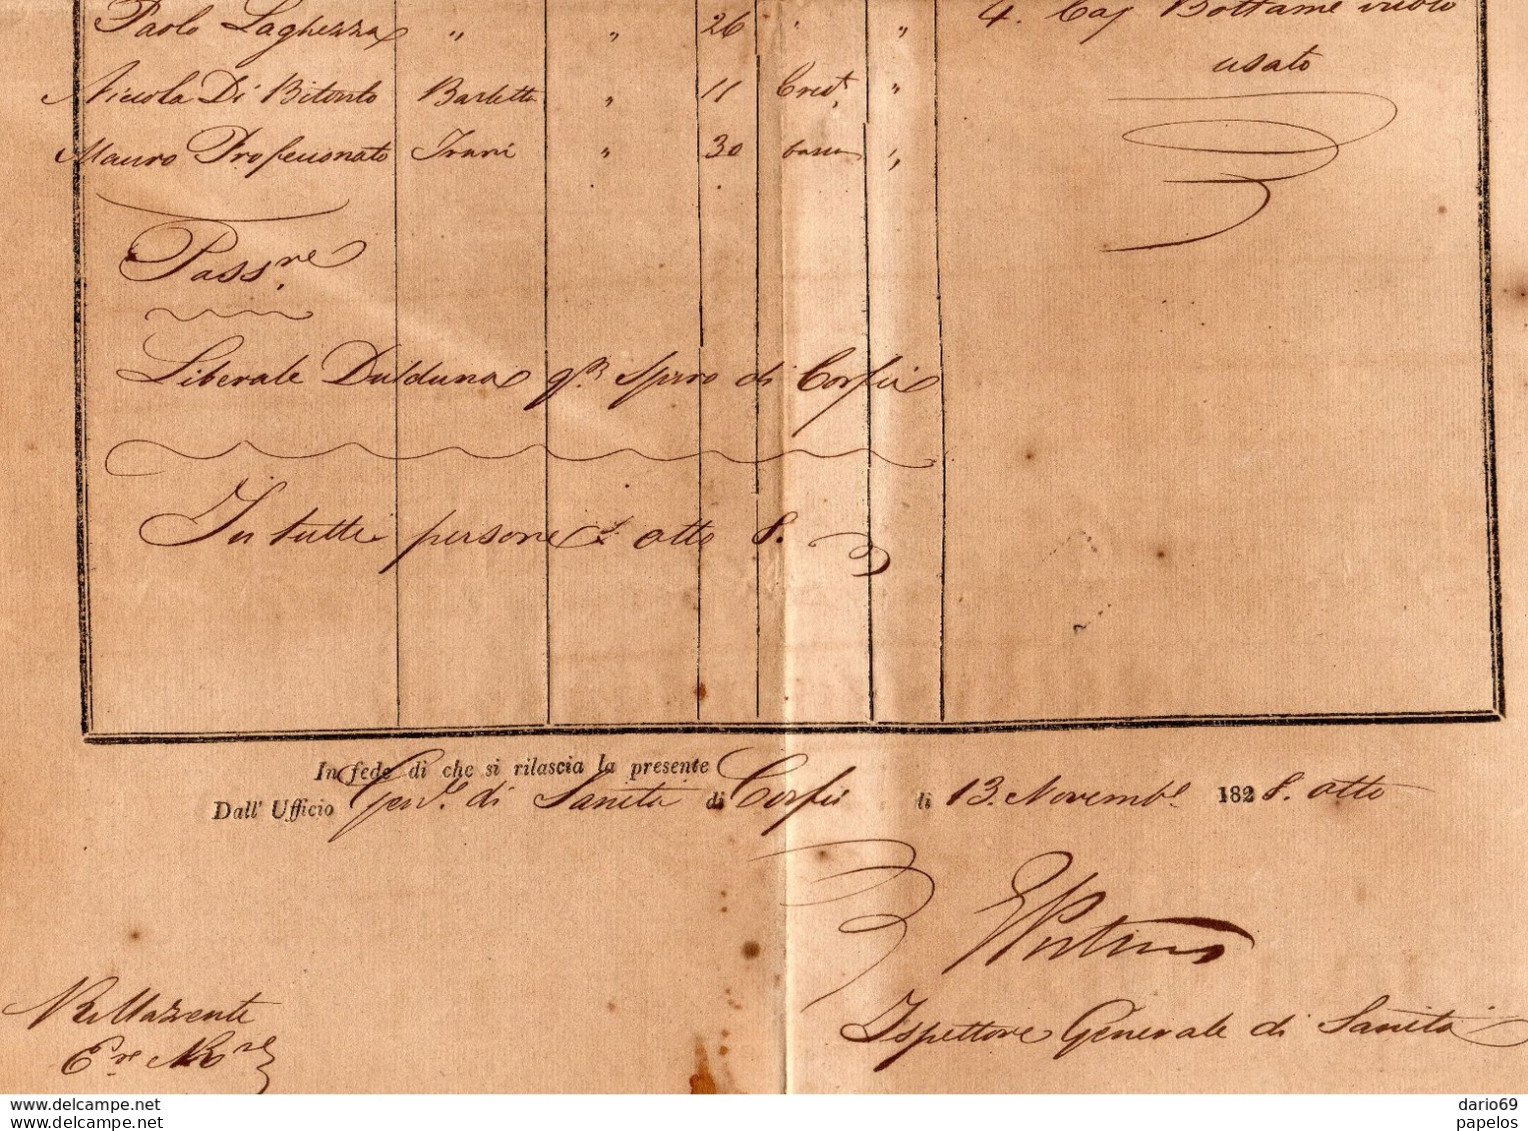 1828 STATI UNITI DELLE ISOLE JONIE PATENTE DI SANITÀ - Historical Documents